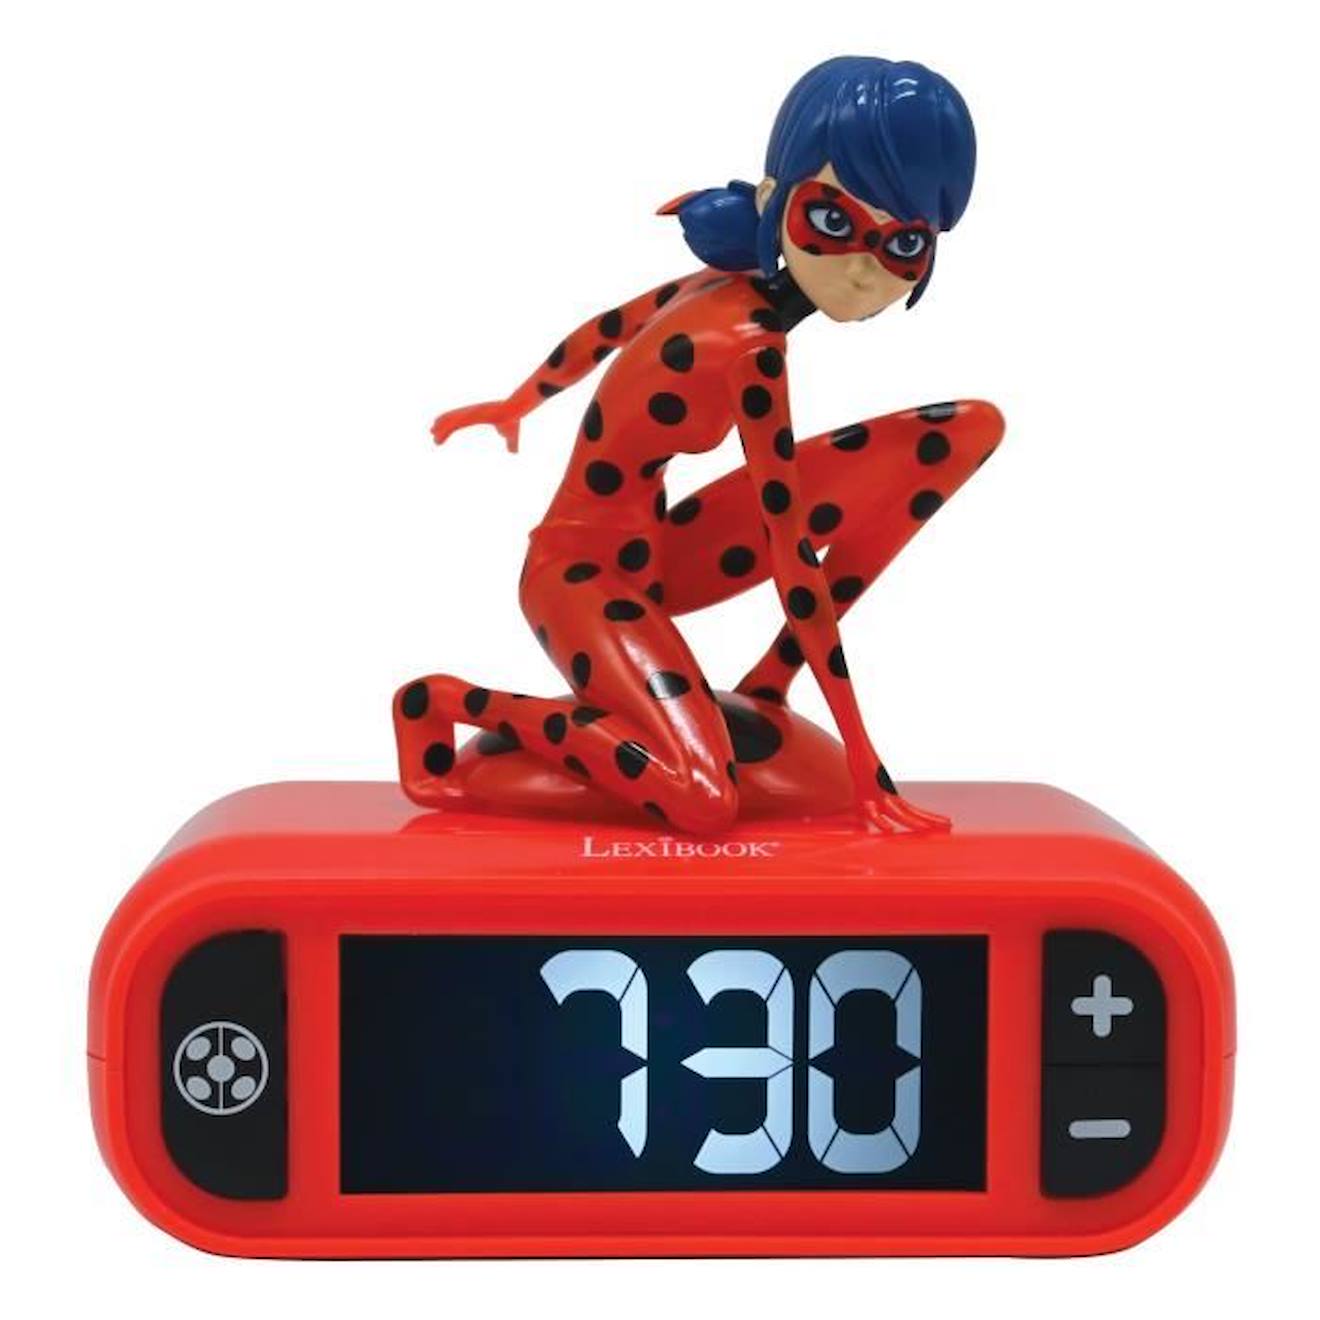 Radio réveil Miraculous - LEXIBOOK - Ladybug lumineuse - Rouge et noir -  Pour enfant rouge - Lexibook